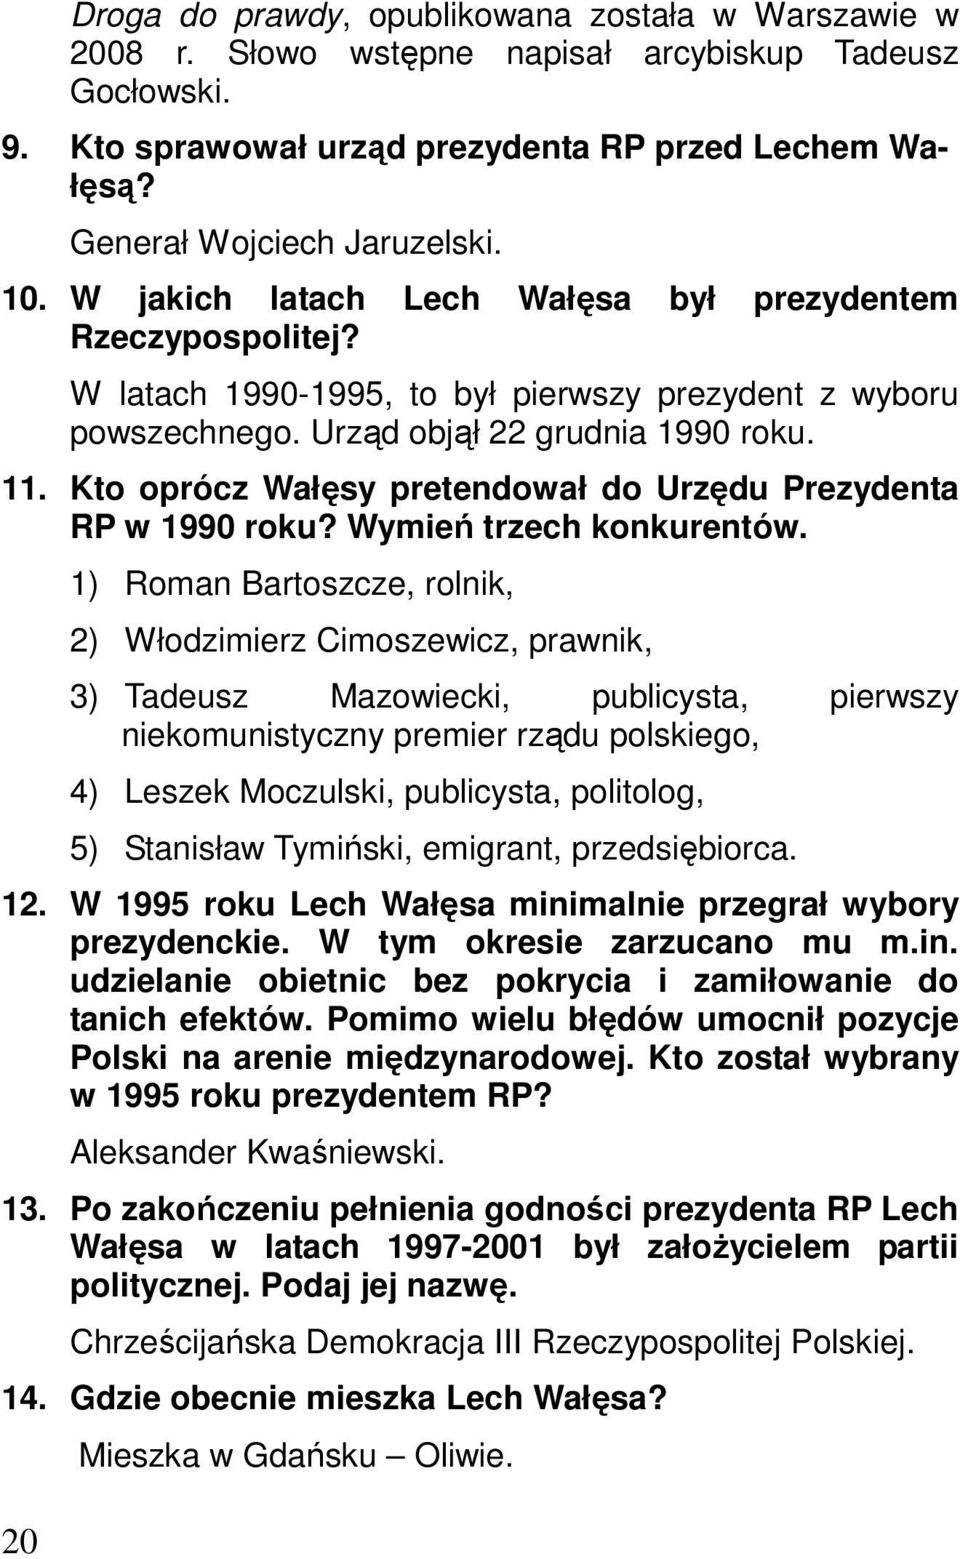 11. Kto oprócz Wałęsy pretendował do Urzędu Prezydenta RP w 1990 roku? Wymień trzech konkurentów.